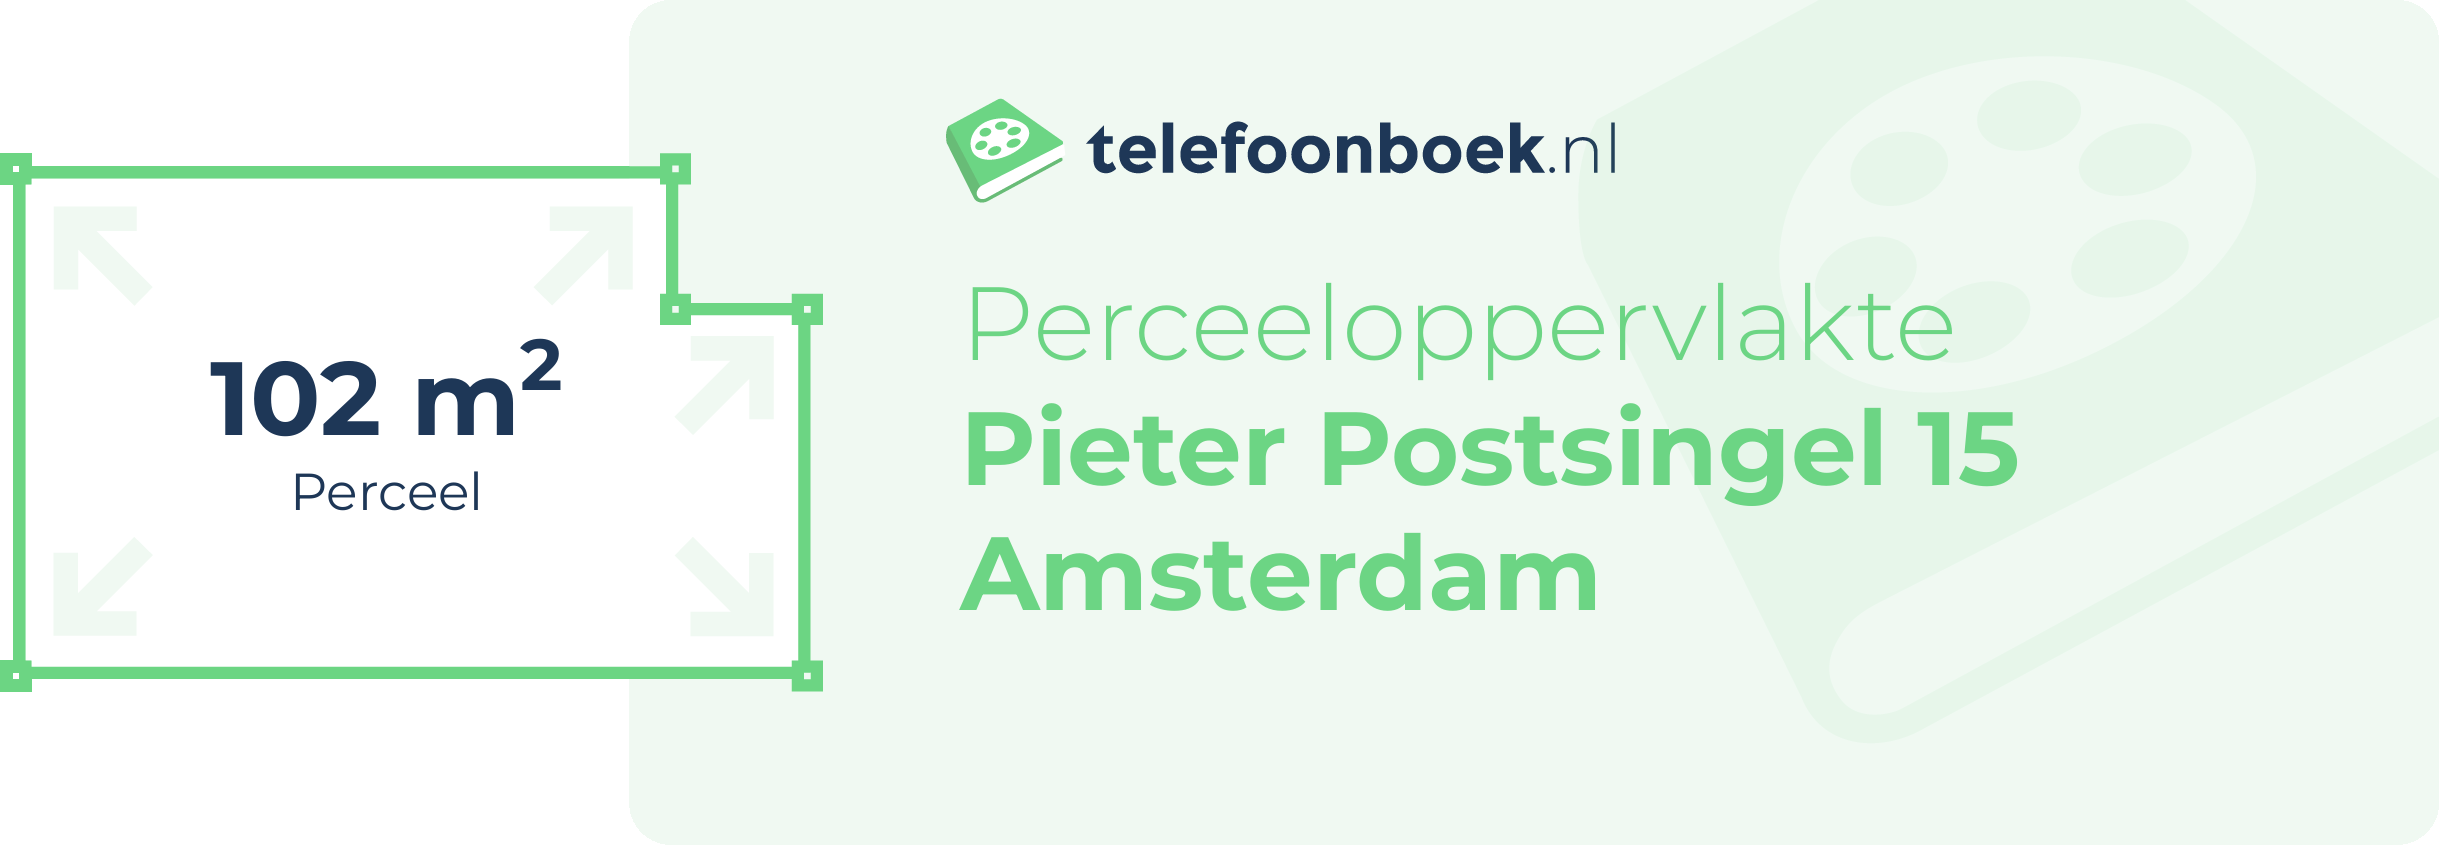 Perceeloppervlakte Pieter Postsingel 15 Amsterdam